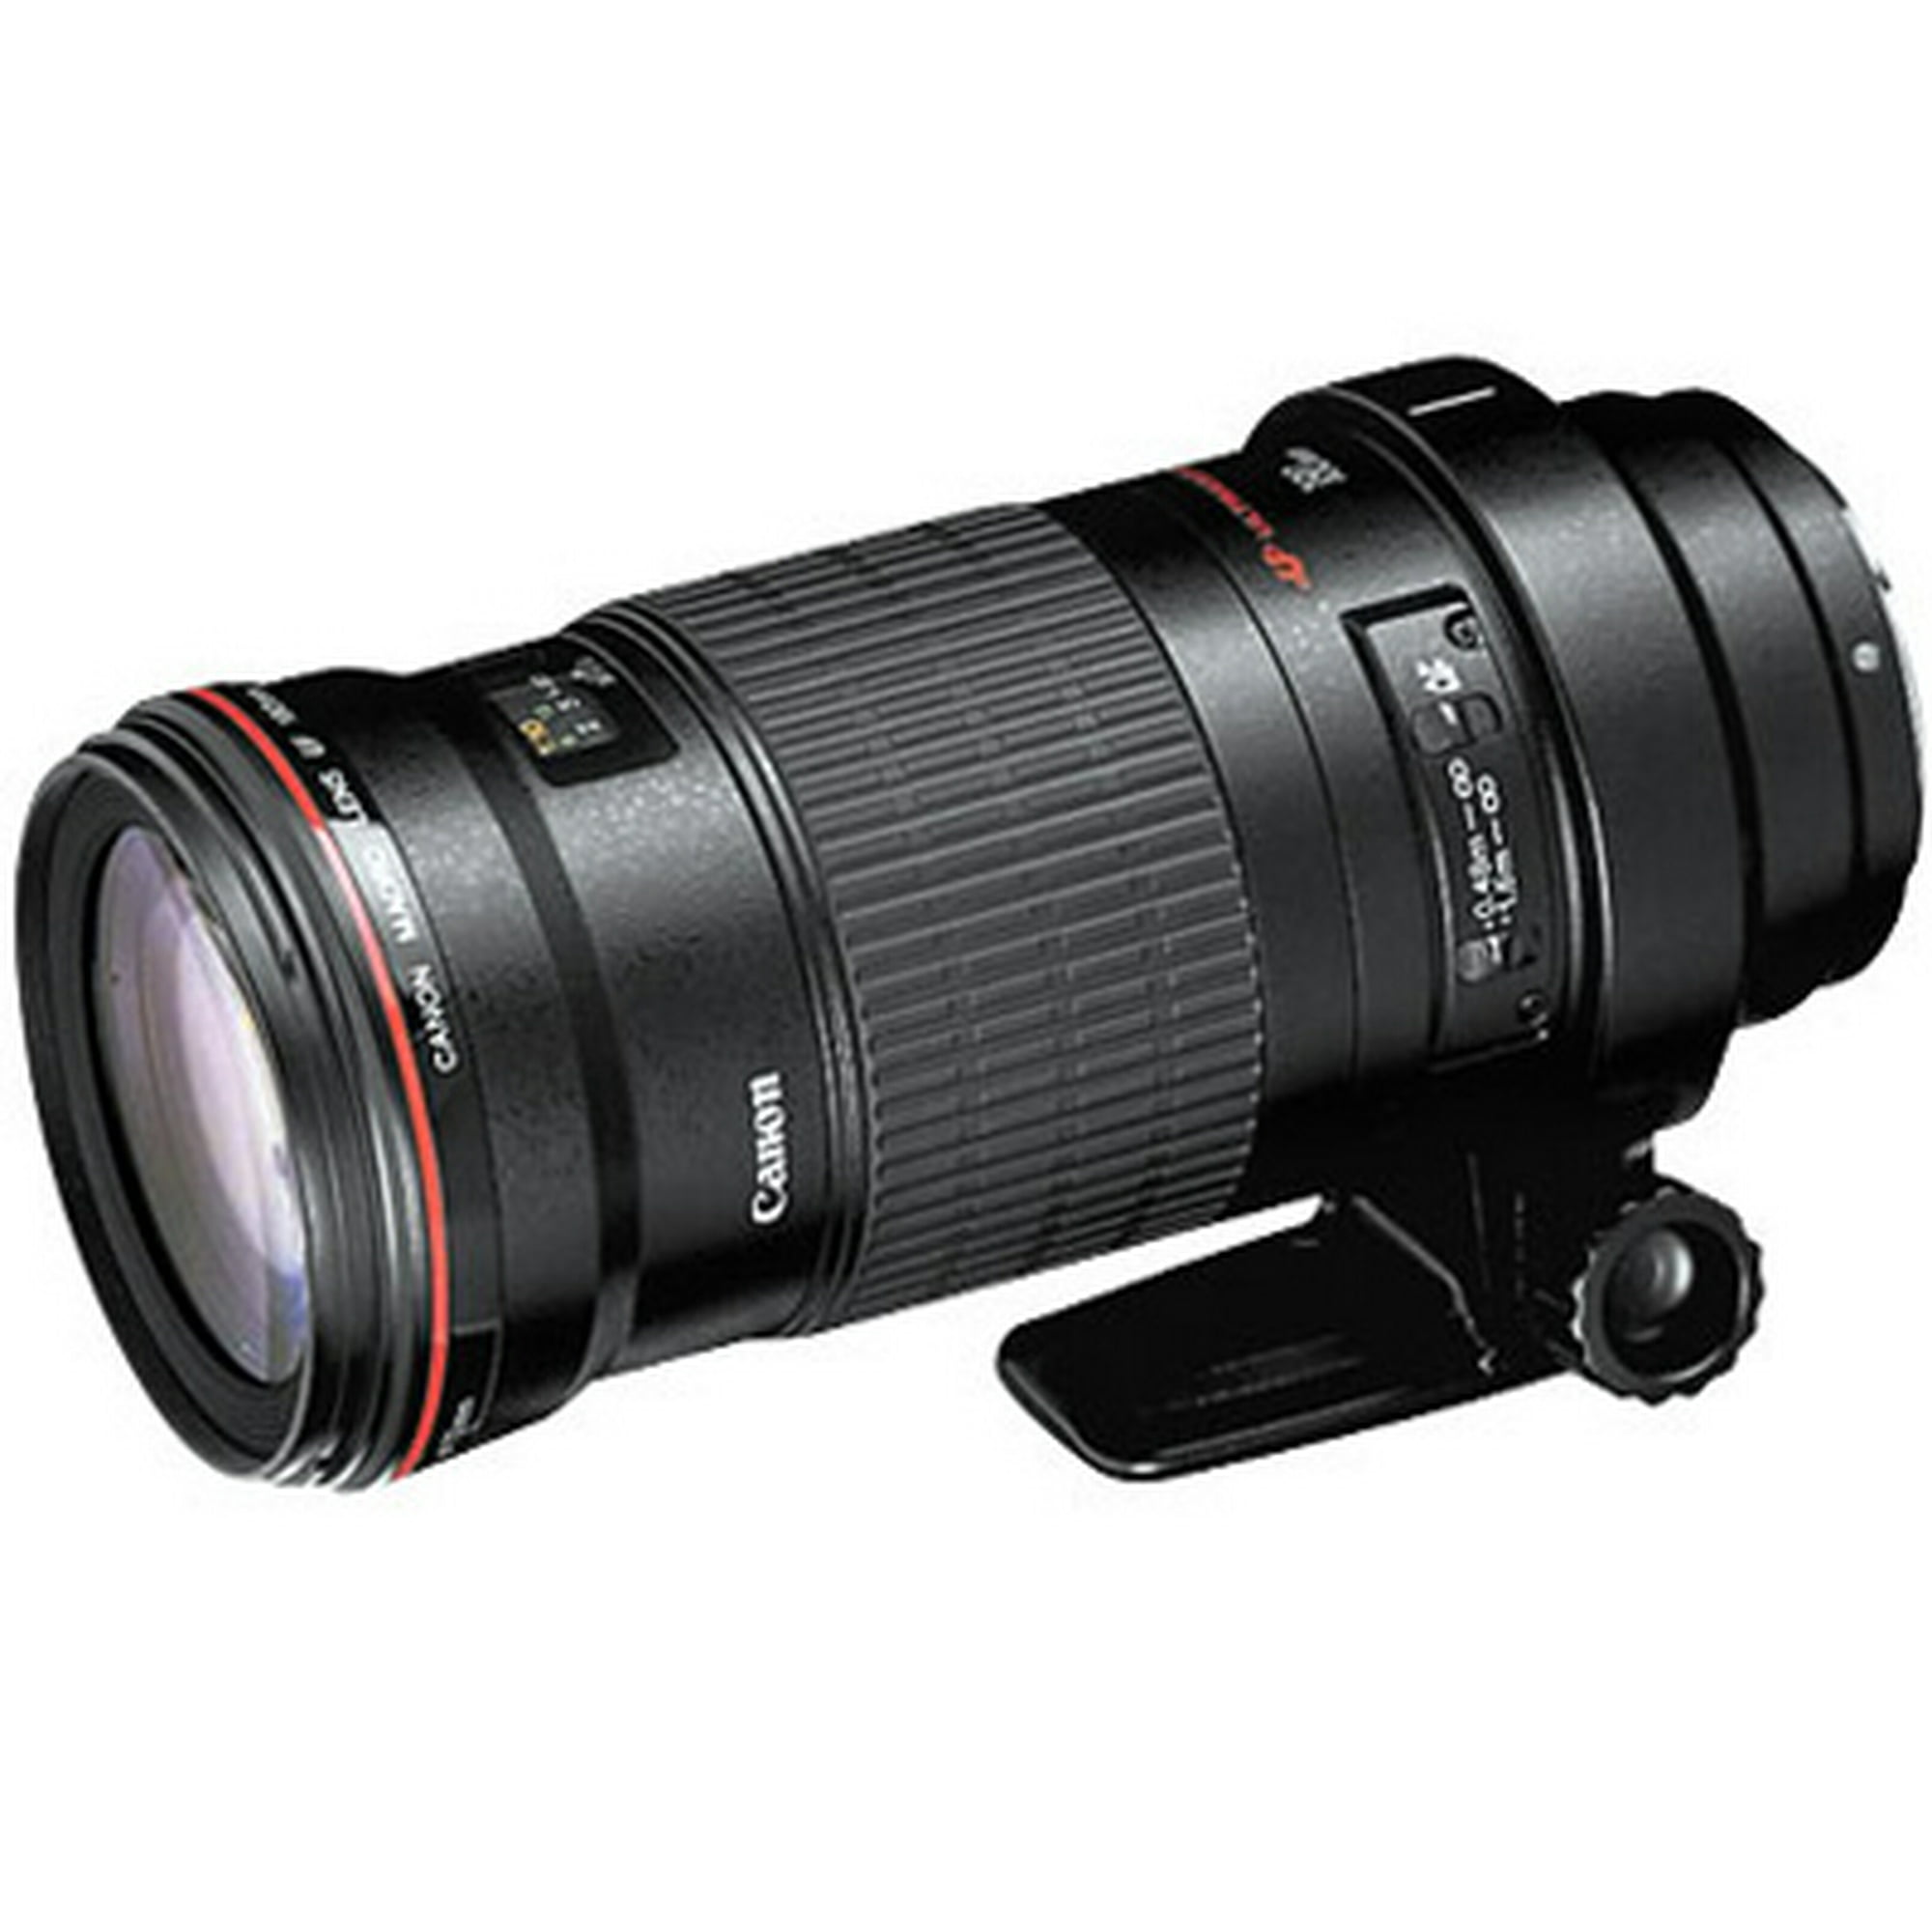 Canon 180mm f3.5L Macro USM EF Lens | Walmart Canada